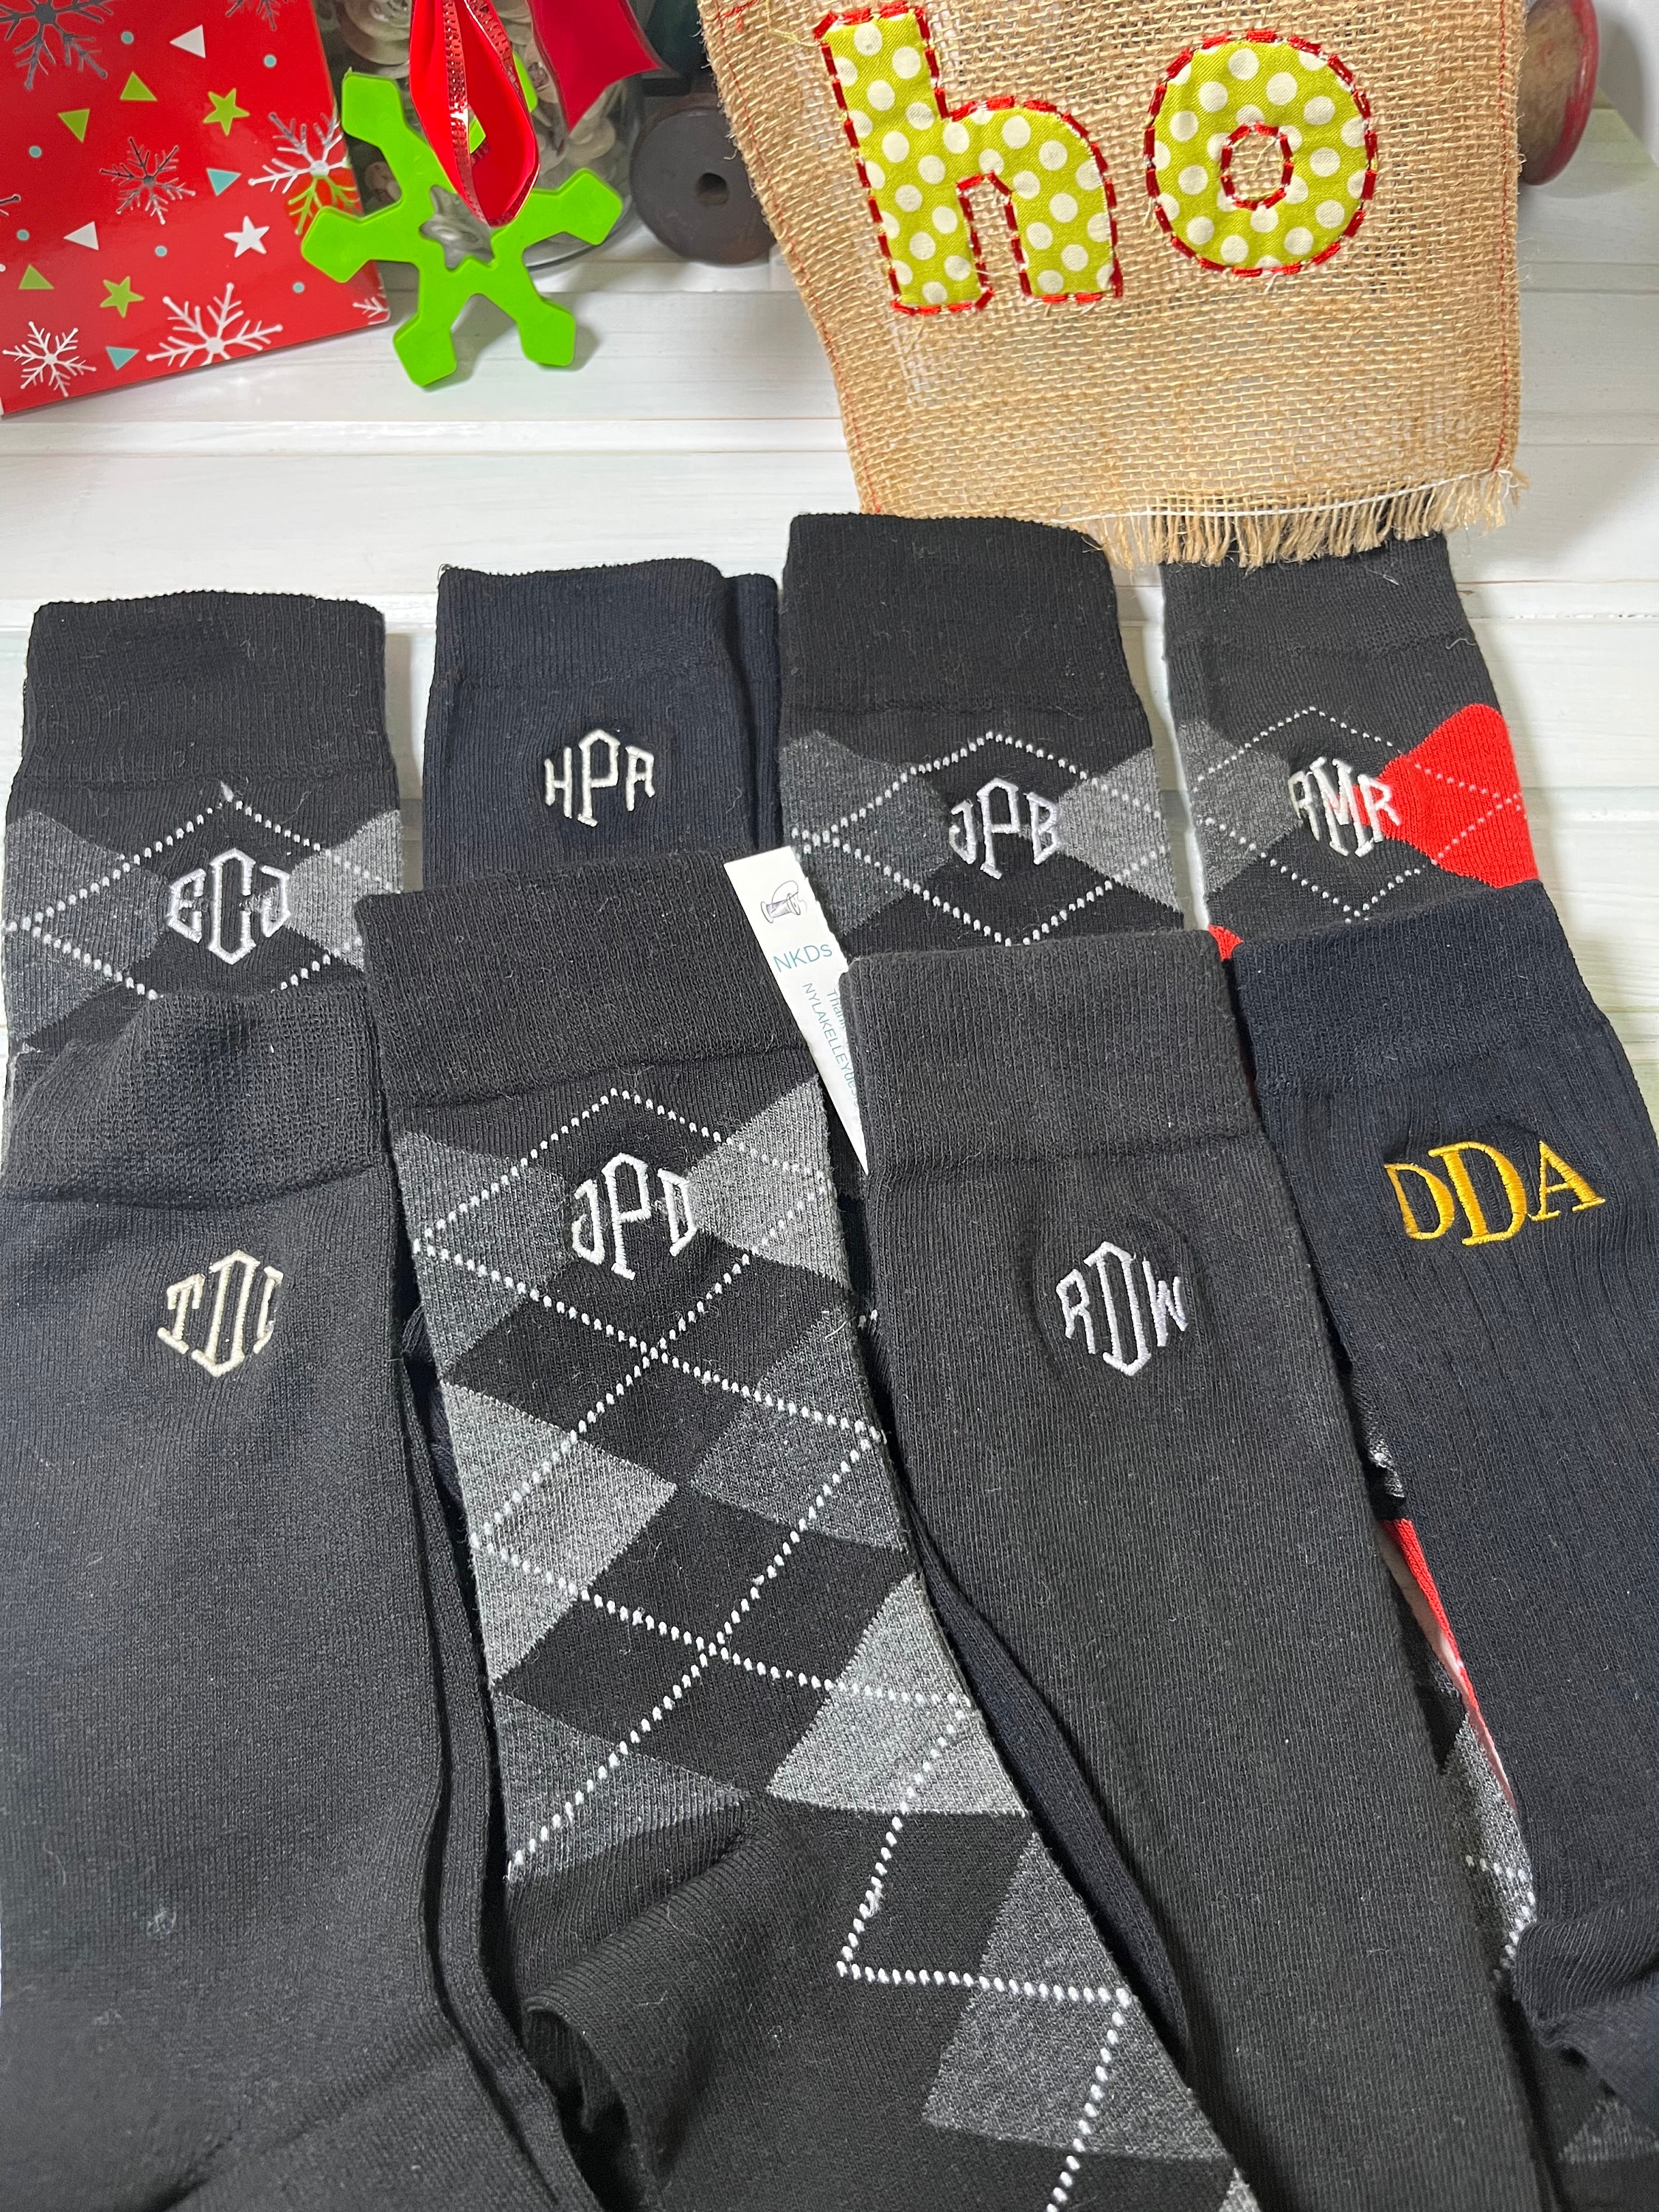 Men's Striped Socks, Grey Socks With Black Stripes, Cotton Socks for Guys,  Crazy Boho Wedding Socks for Groom / Groomsmen, Gift for Him 